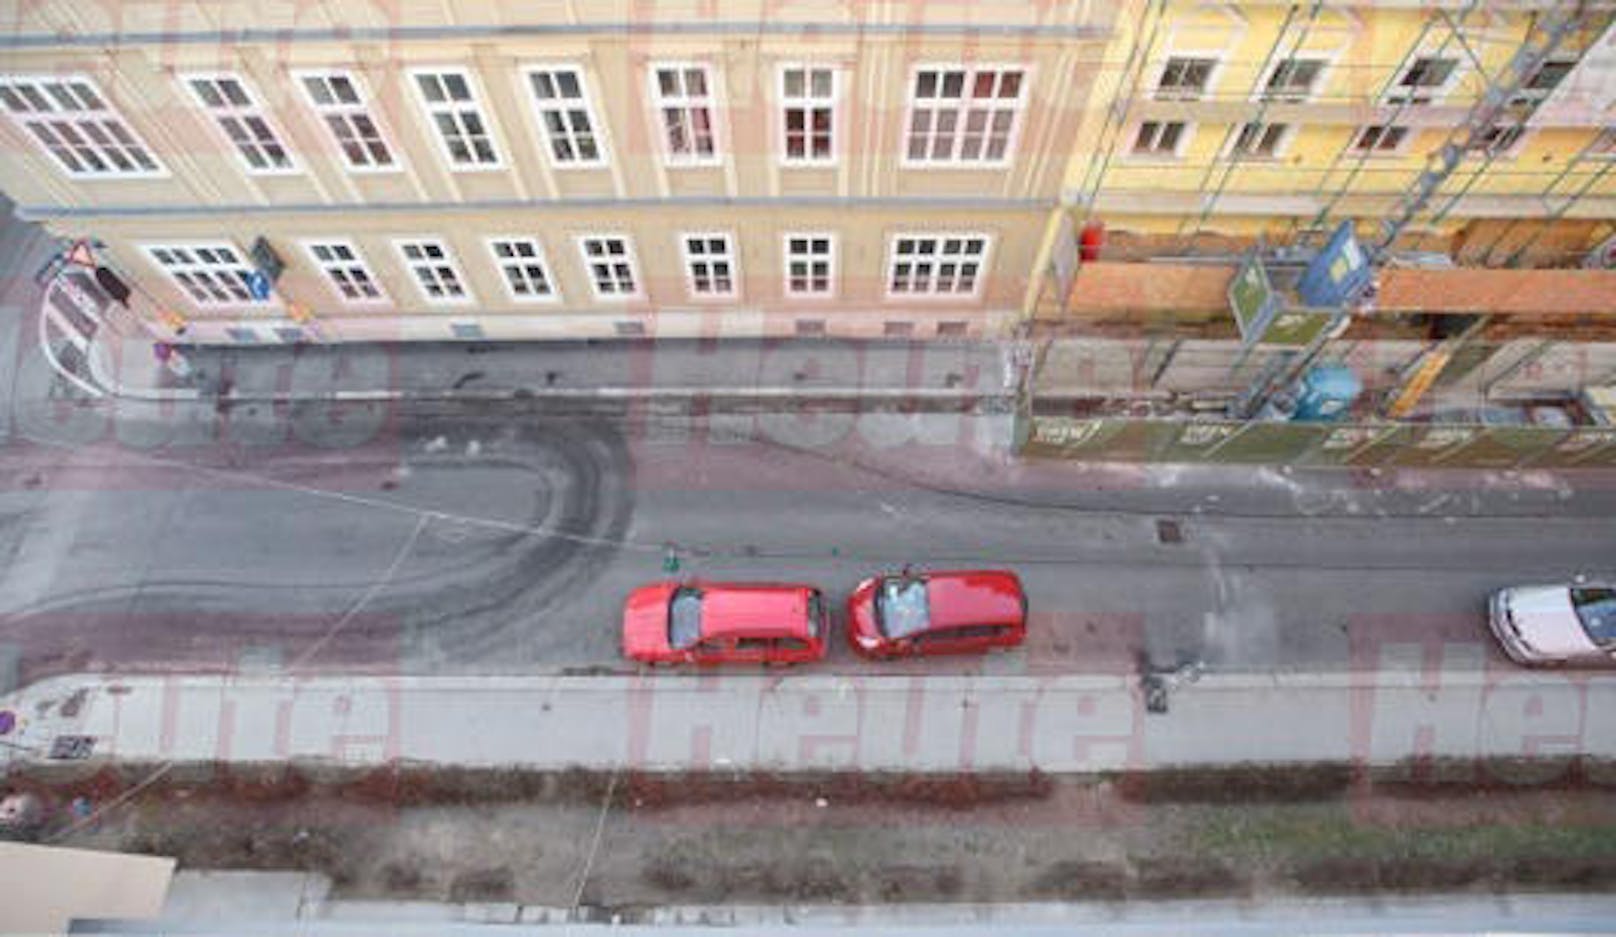 Unterhalb der Wohnung, in der Oberen Augartenstraße in Wien-Leopoldstadt, wurde eine männliche Leiche auf dem Gehsteig gefunden.